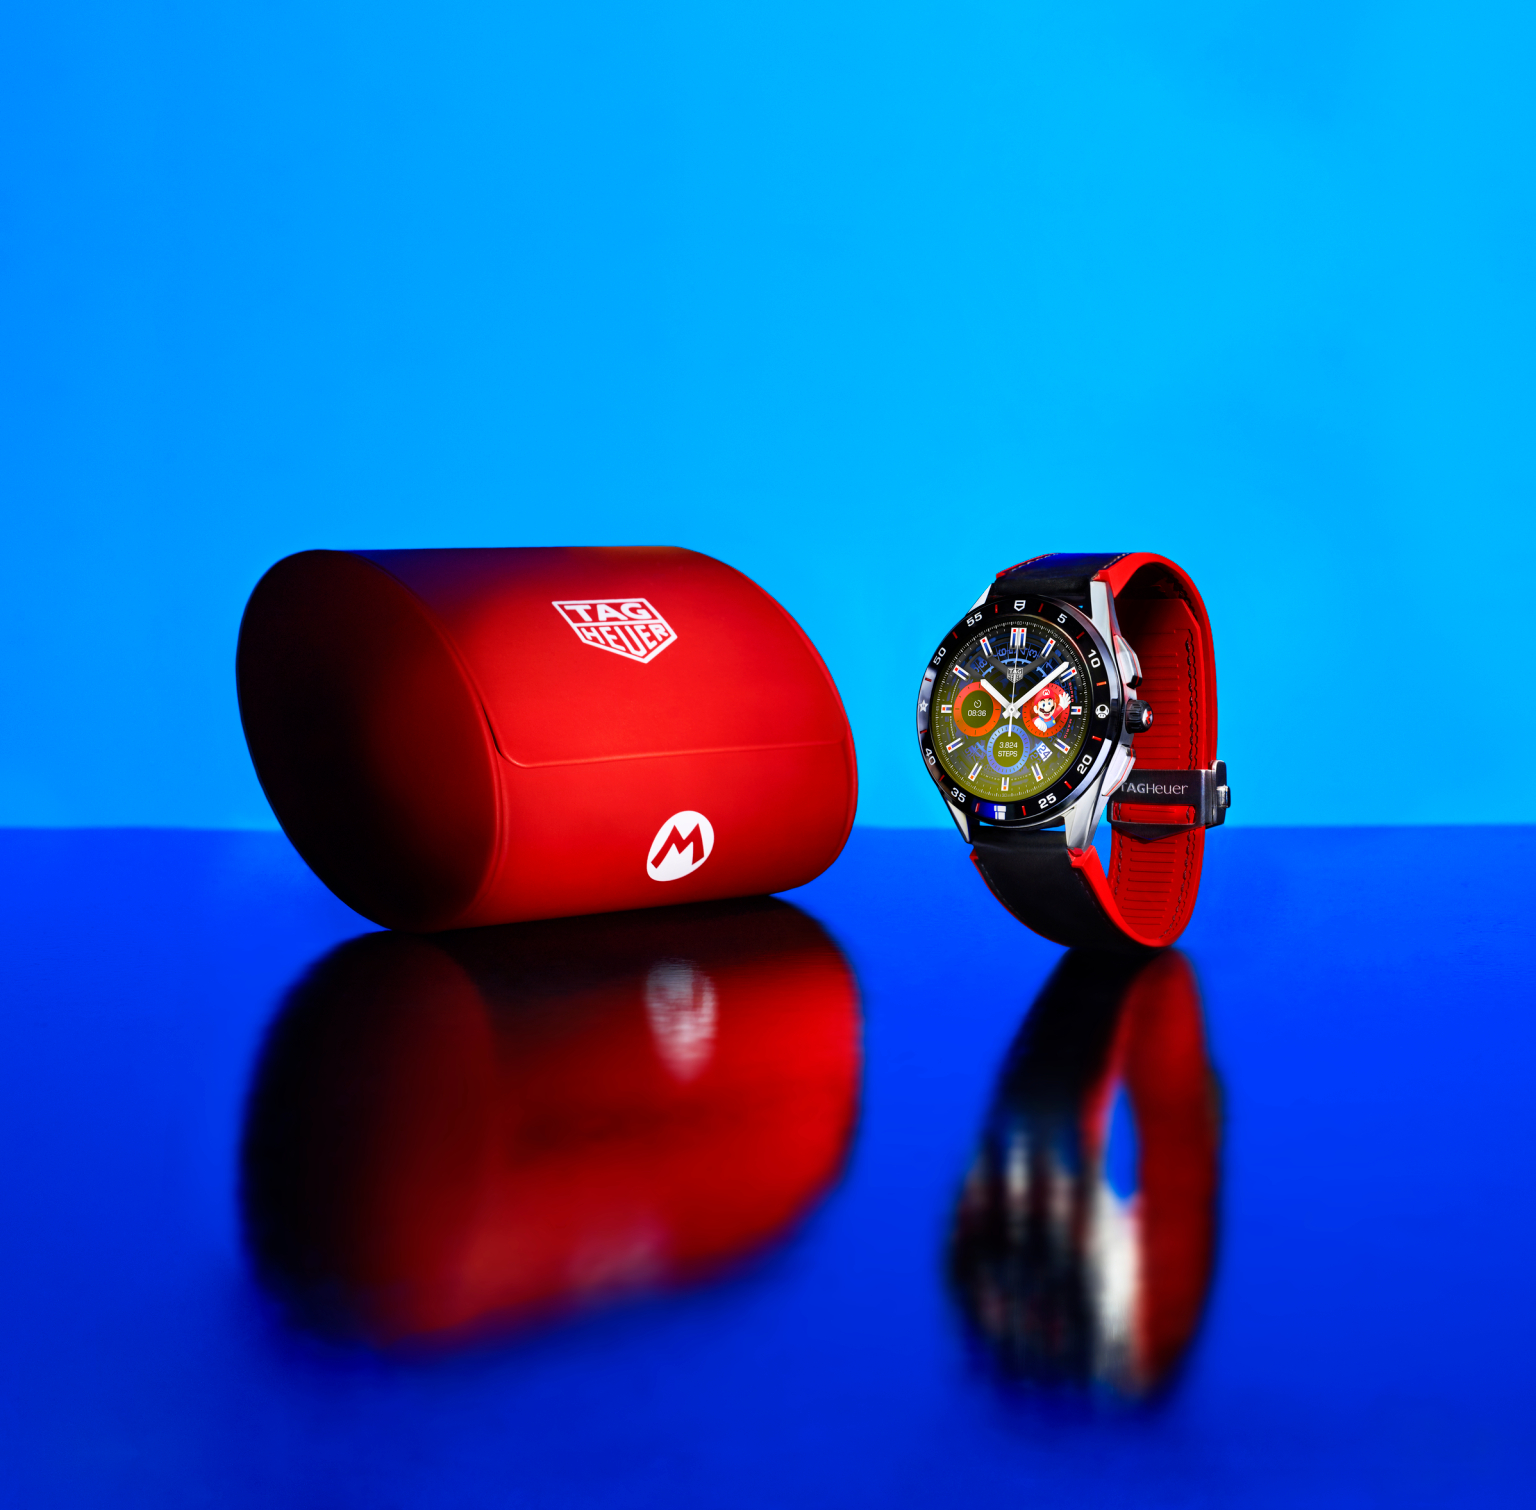 Si eres fan de Super Mario este smartwatch es para ti